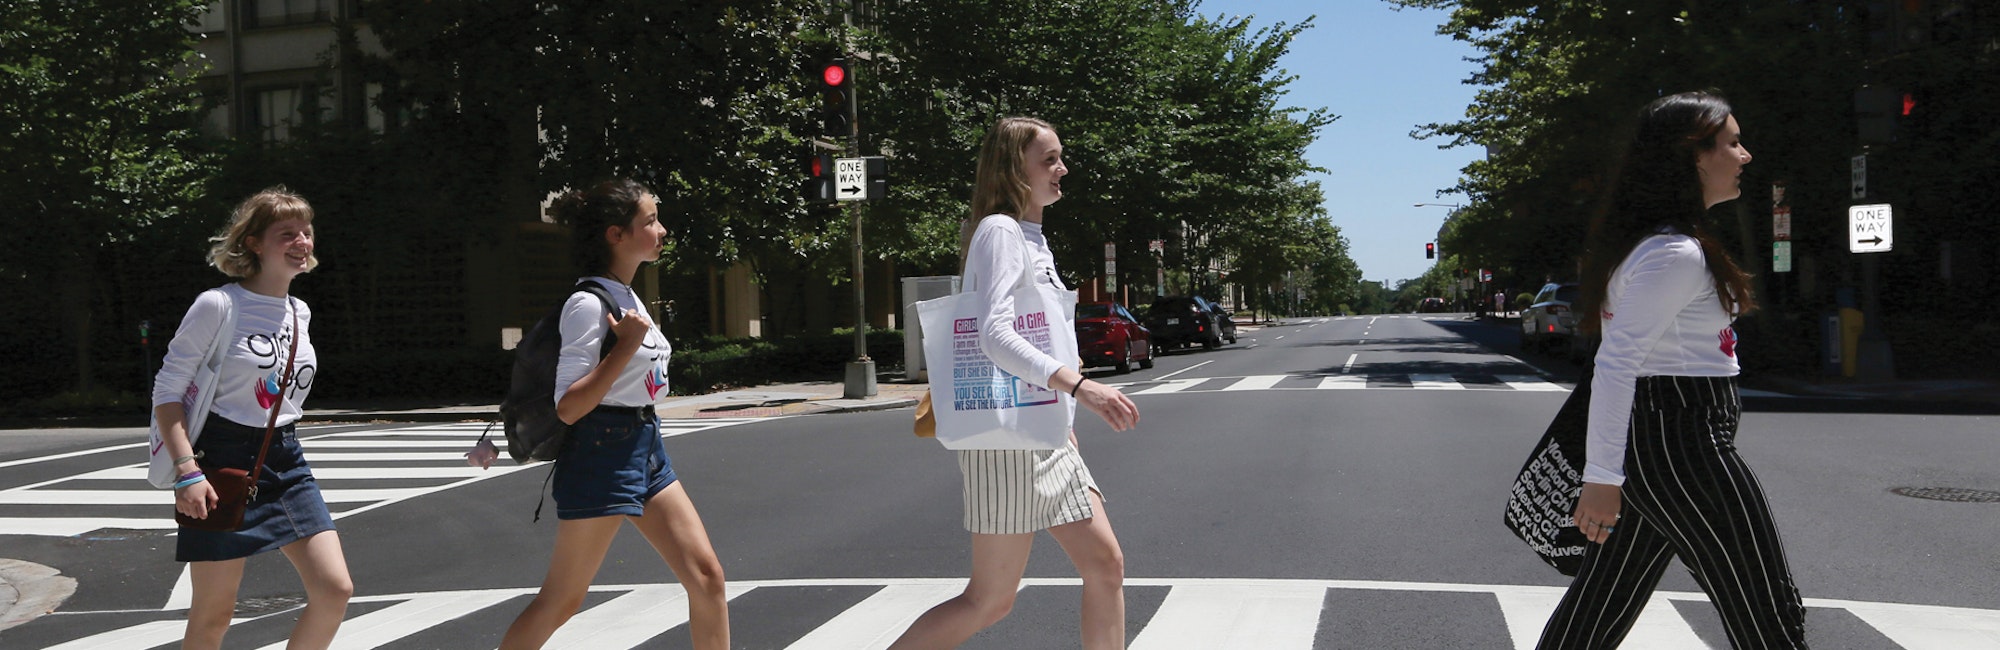 5 filles traversent la rue l'une après l'autre, face à l'autre, avec leur chemise d'adolescente conseillère.